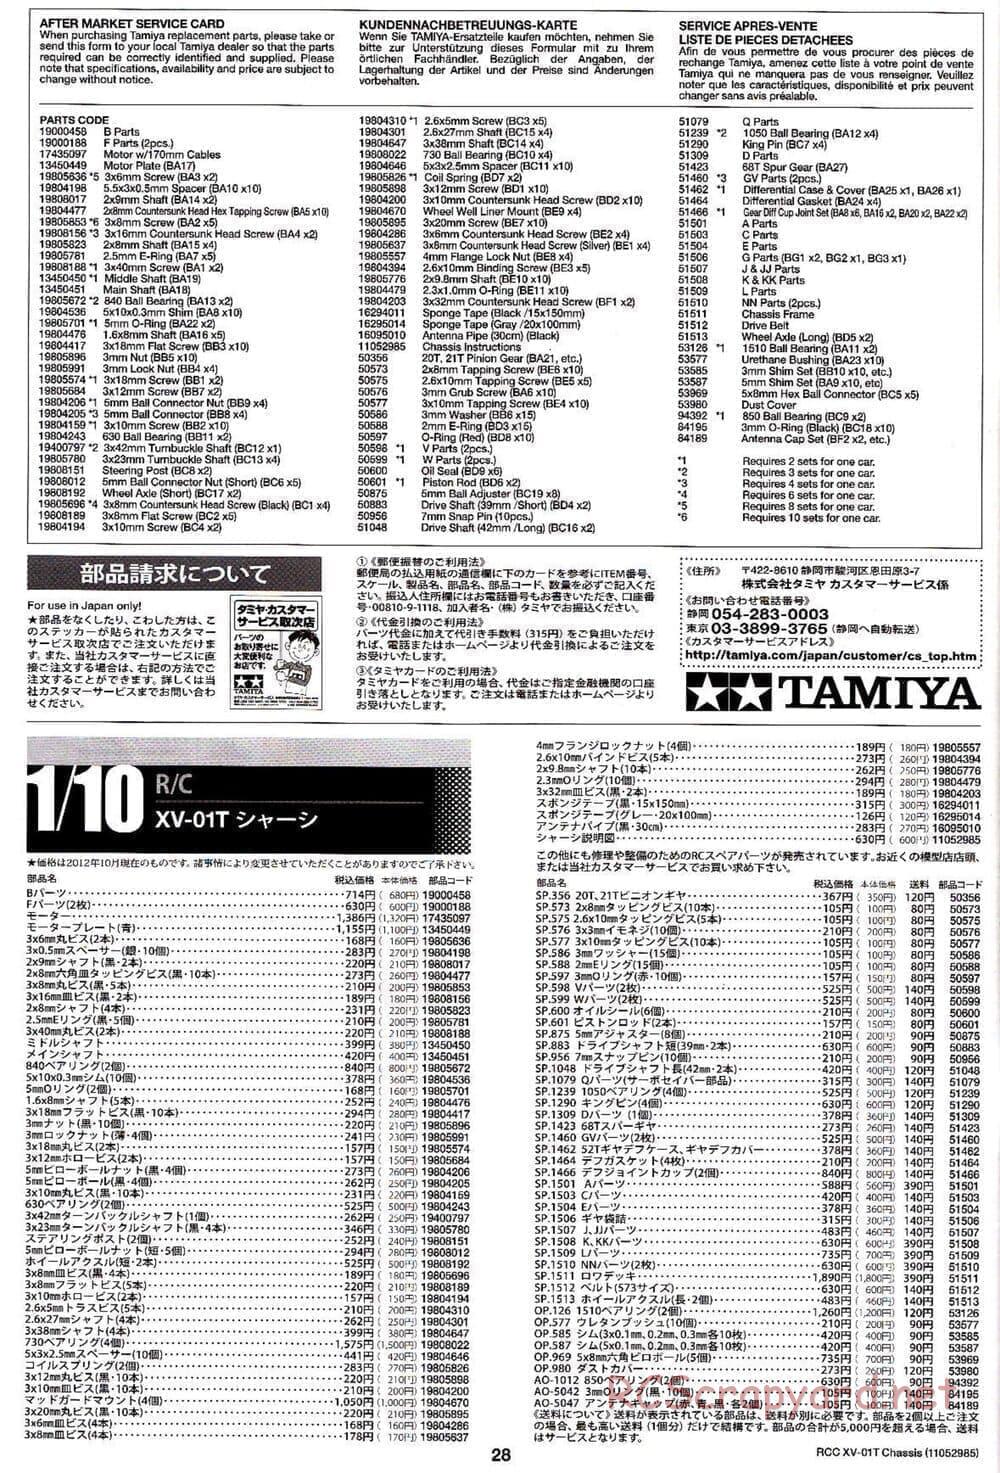 Tamiya - XV-01T Chassis - Manual - Page 28